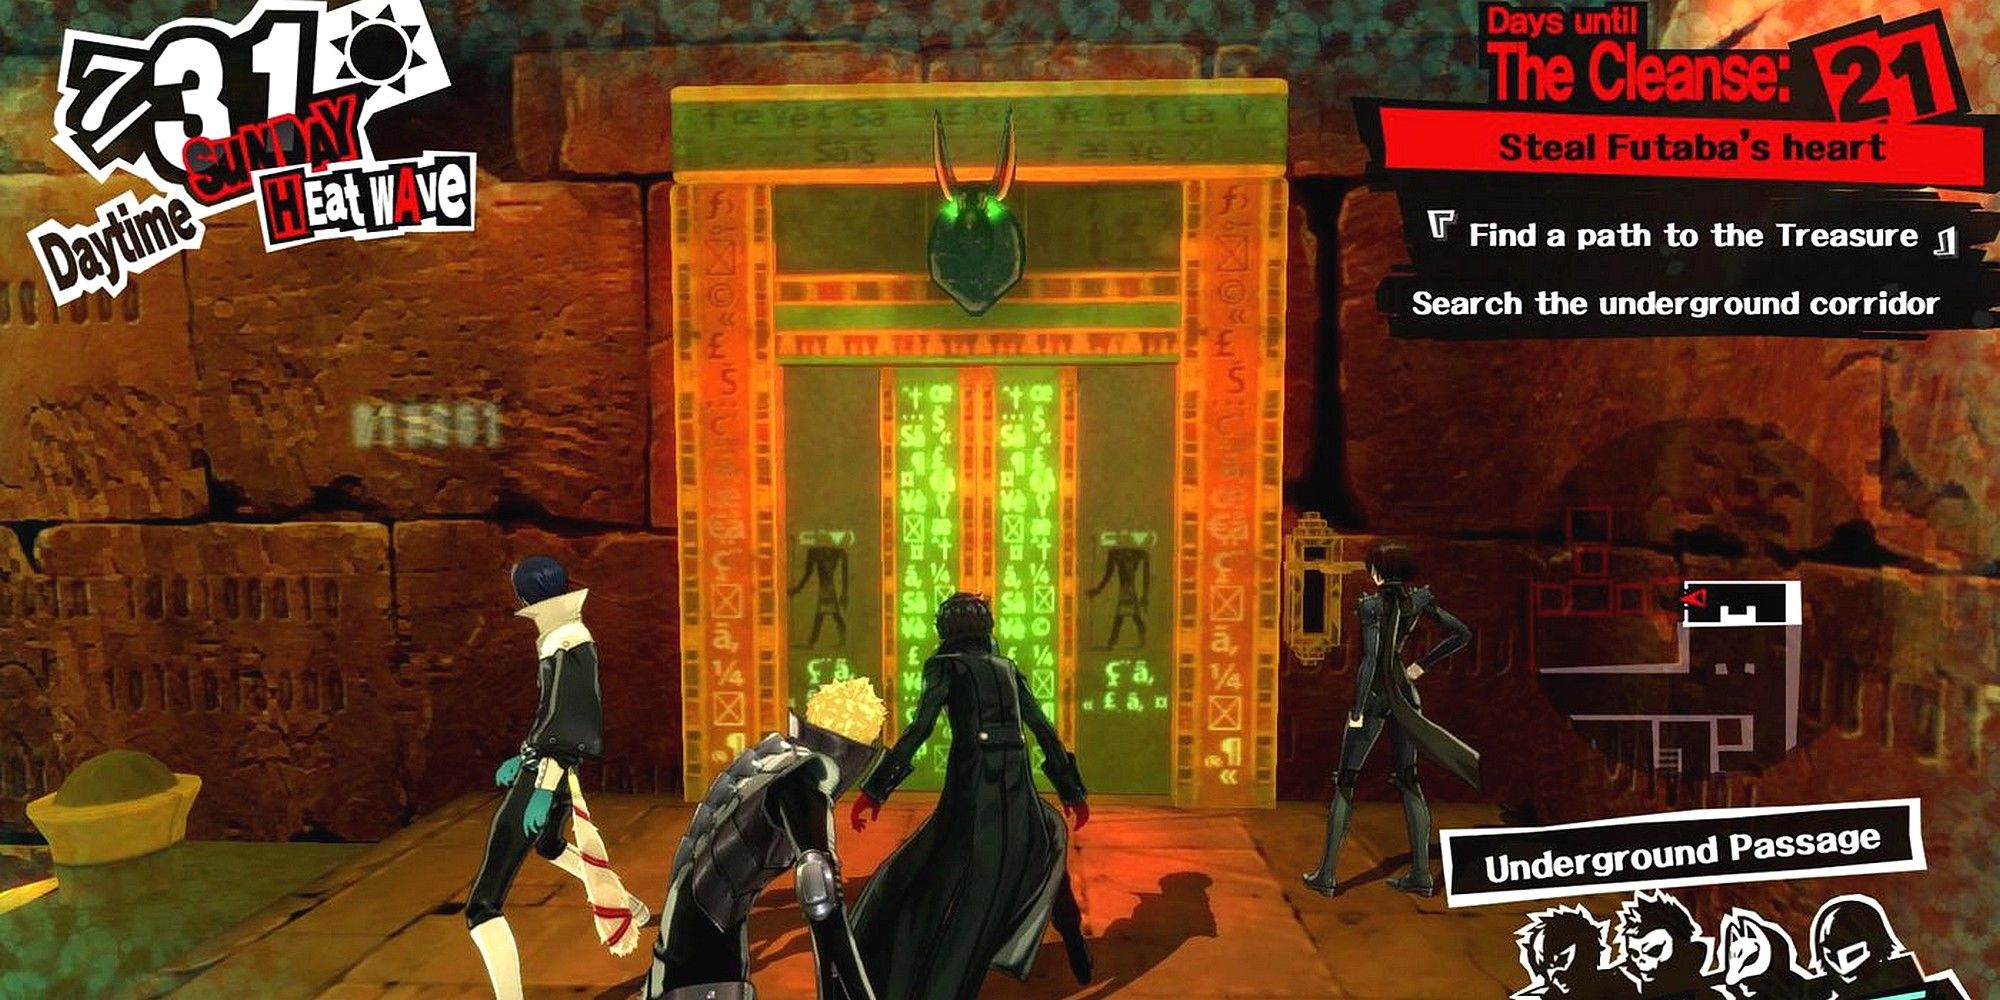 joker yusuke ryuji and makoto in futaba's underground passage by a glyph door